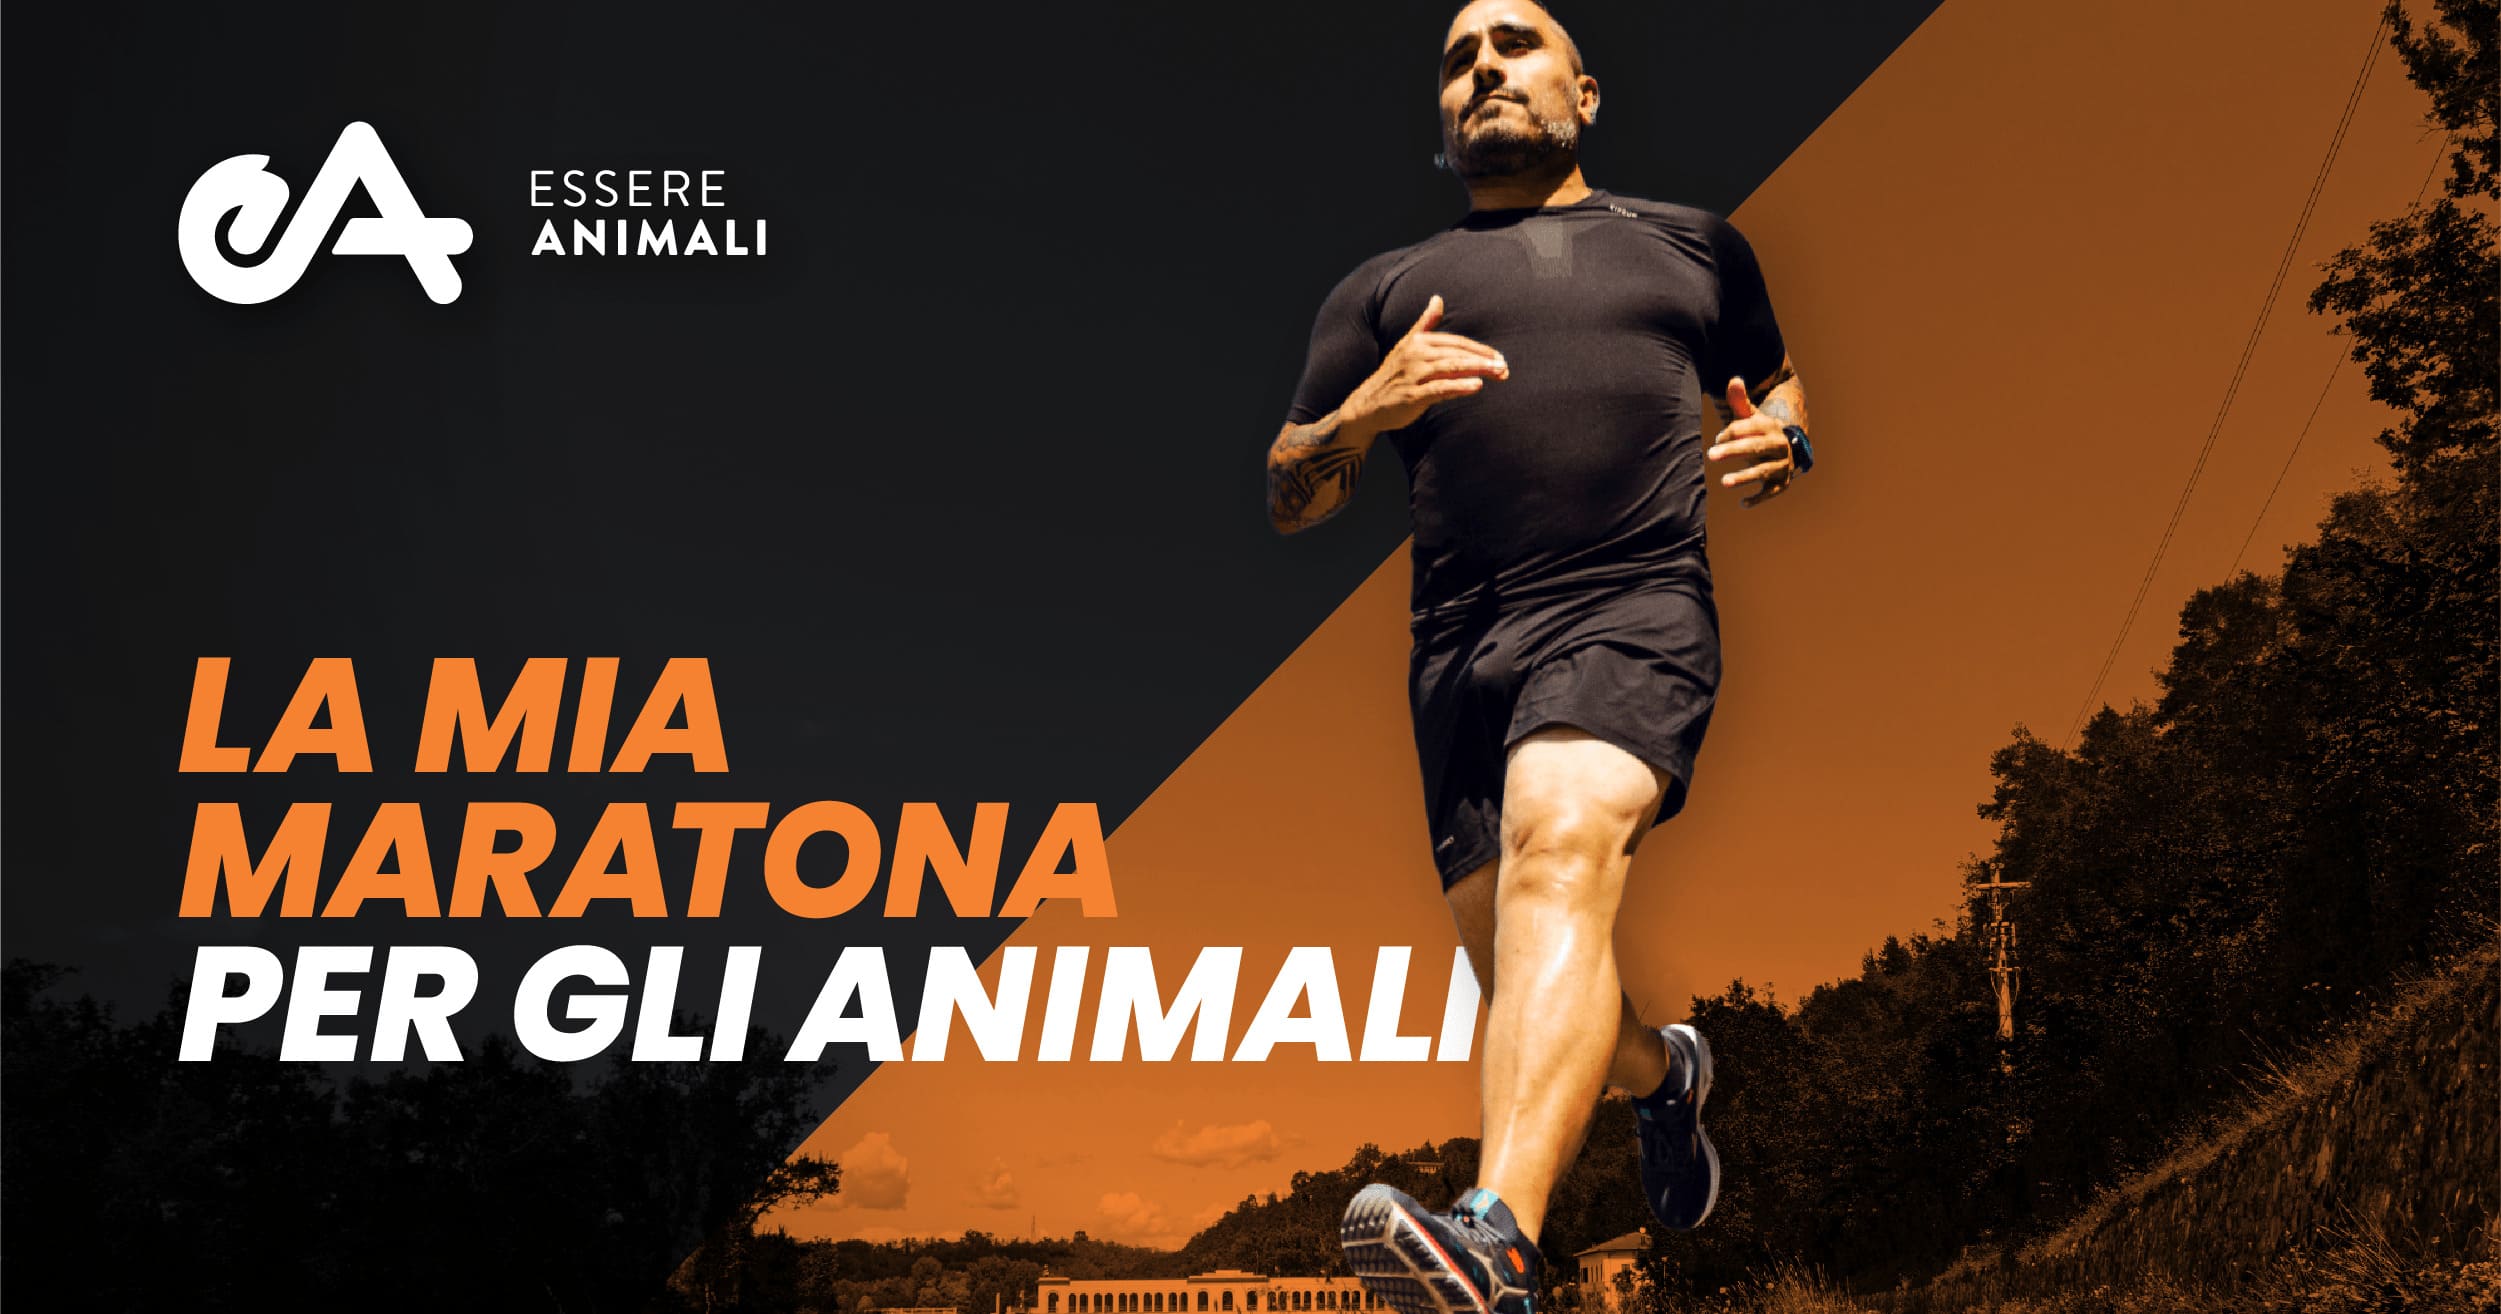 Corro la London Marathon per gli animali-Essere Animali